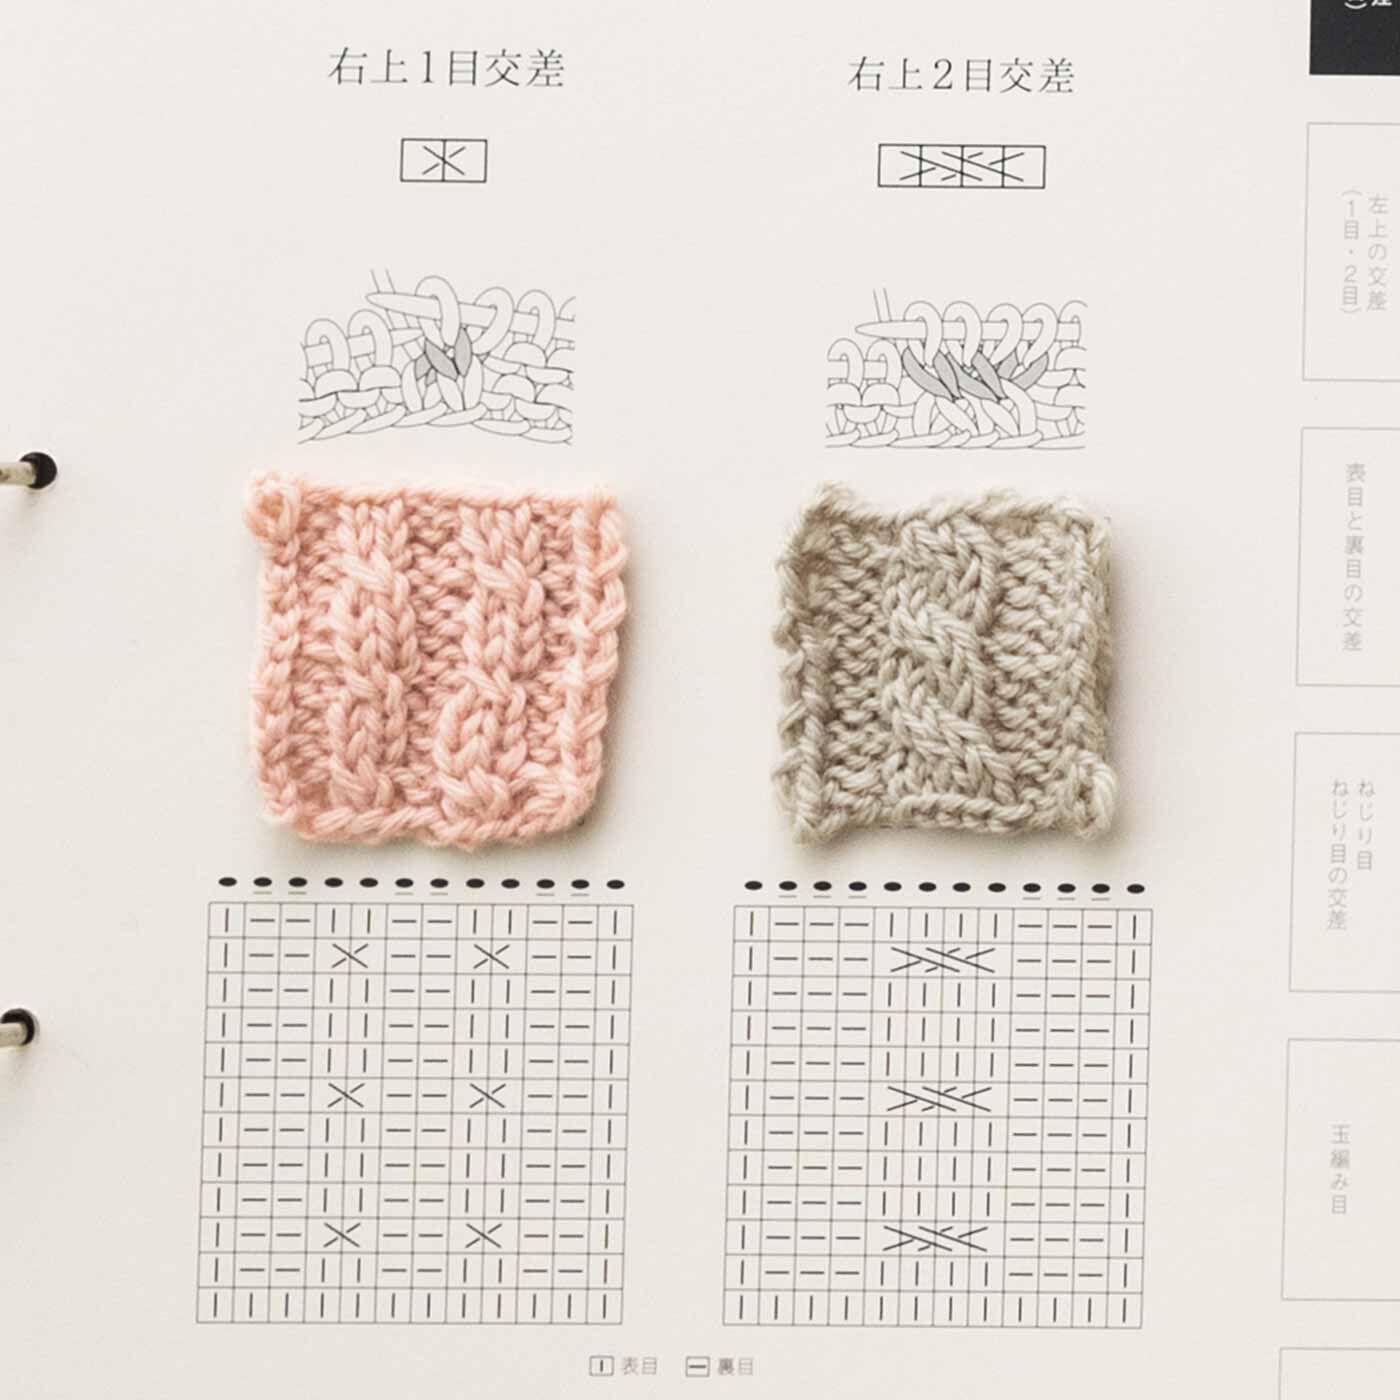 Couturier|「はじめてさんのきほんのき」棒針編みアラン模様レッスンの会|5cm角の編み地は一緒に届く台紙に貼って。バインダーでファイリングすると自分だけの見本帳のできあがり。